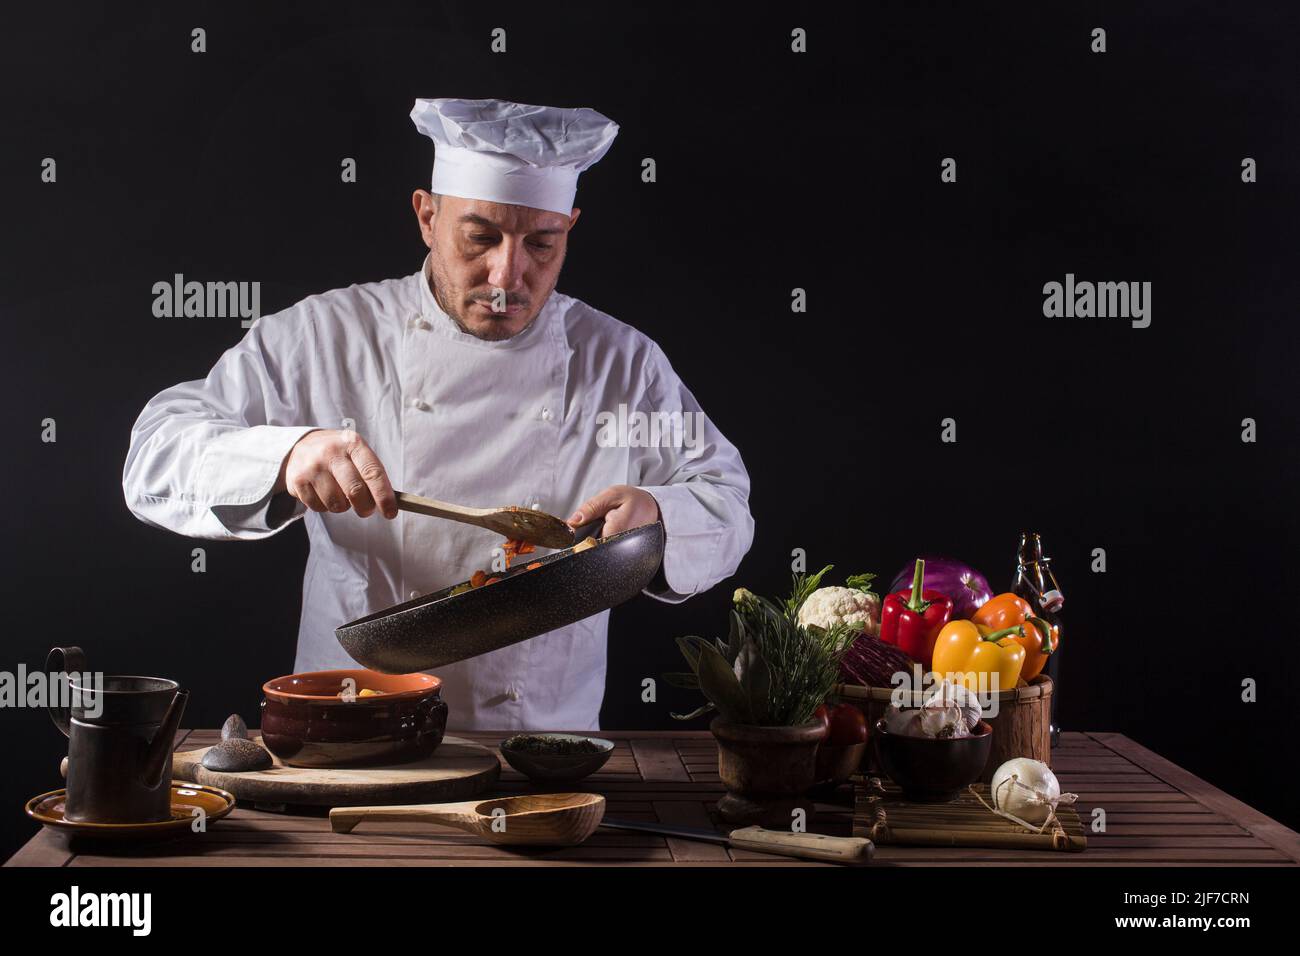 Chef masculino con uniforme blanco preparando plato de comida con verduras antes de servir mientras trabaja en una cocina de restaurante Foto de stock